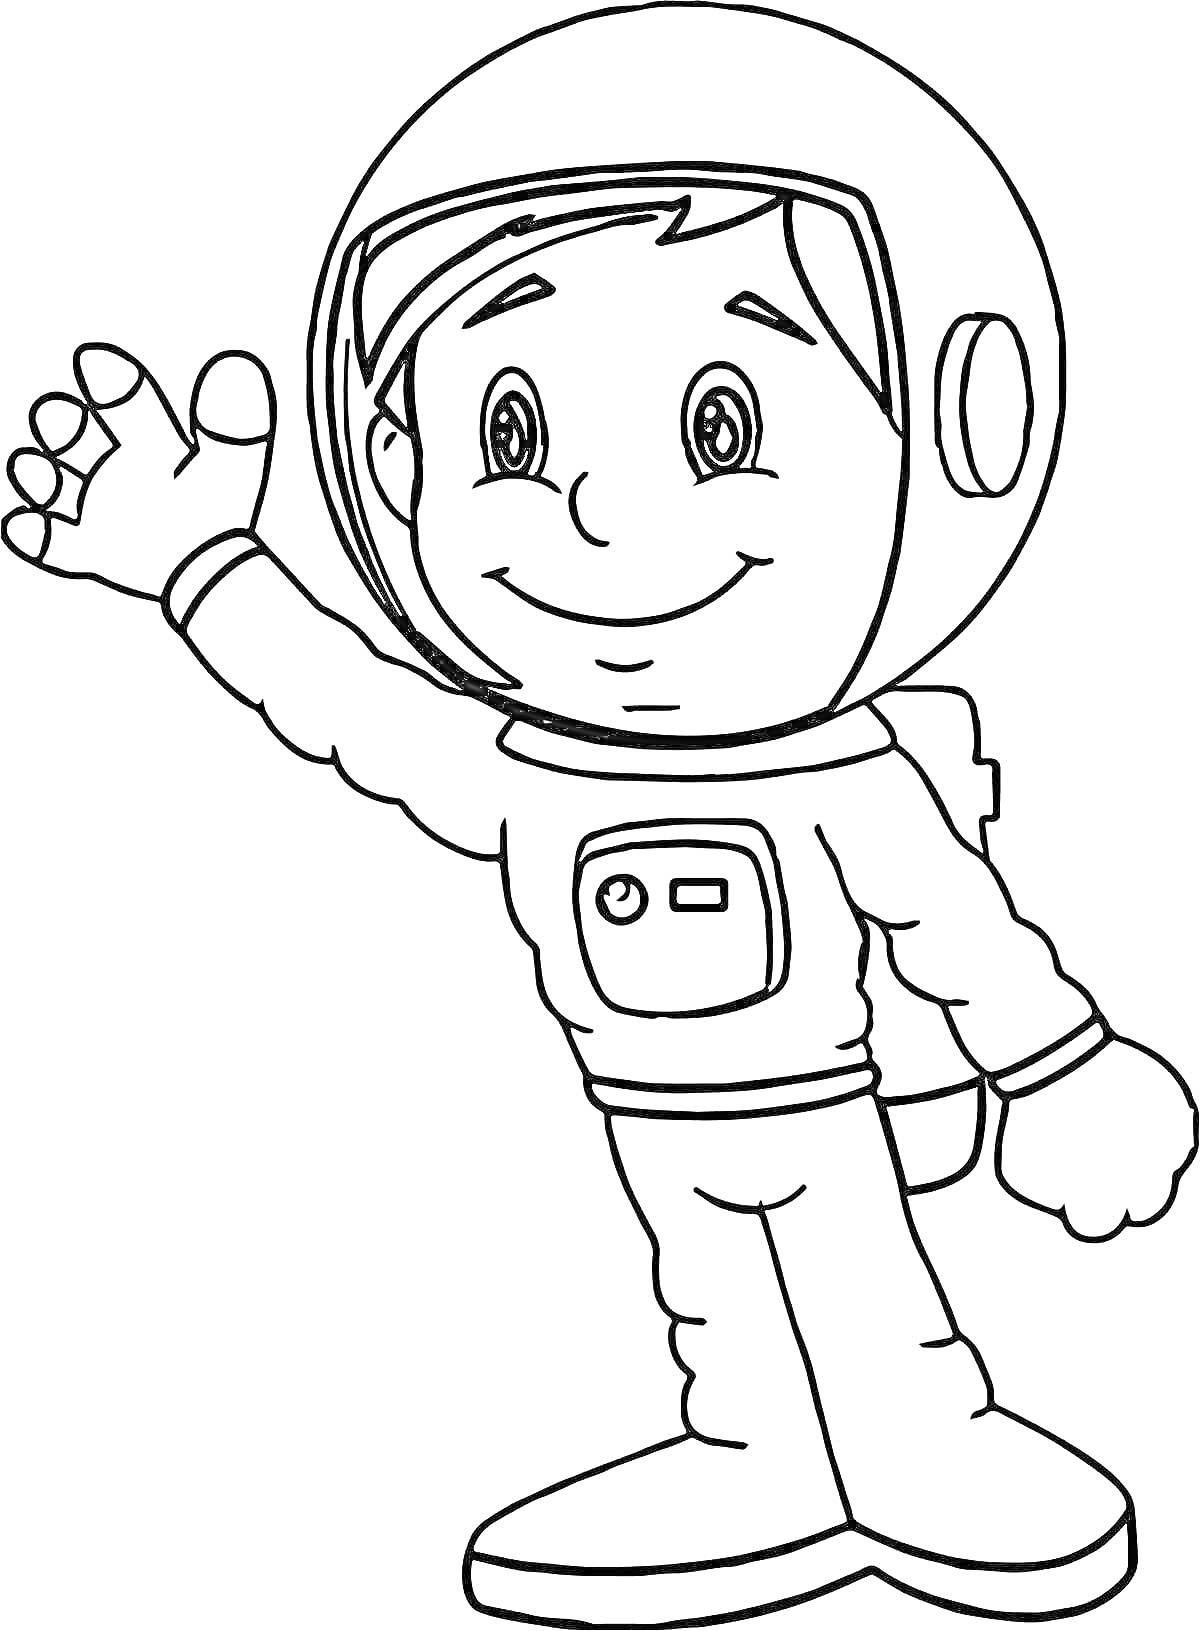 Раскраска Космонавт в скафандре, приветствующий жест рукой